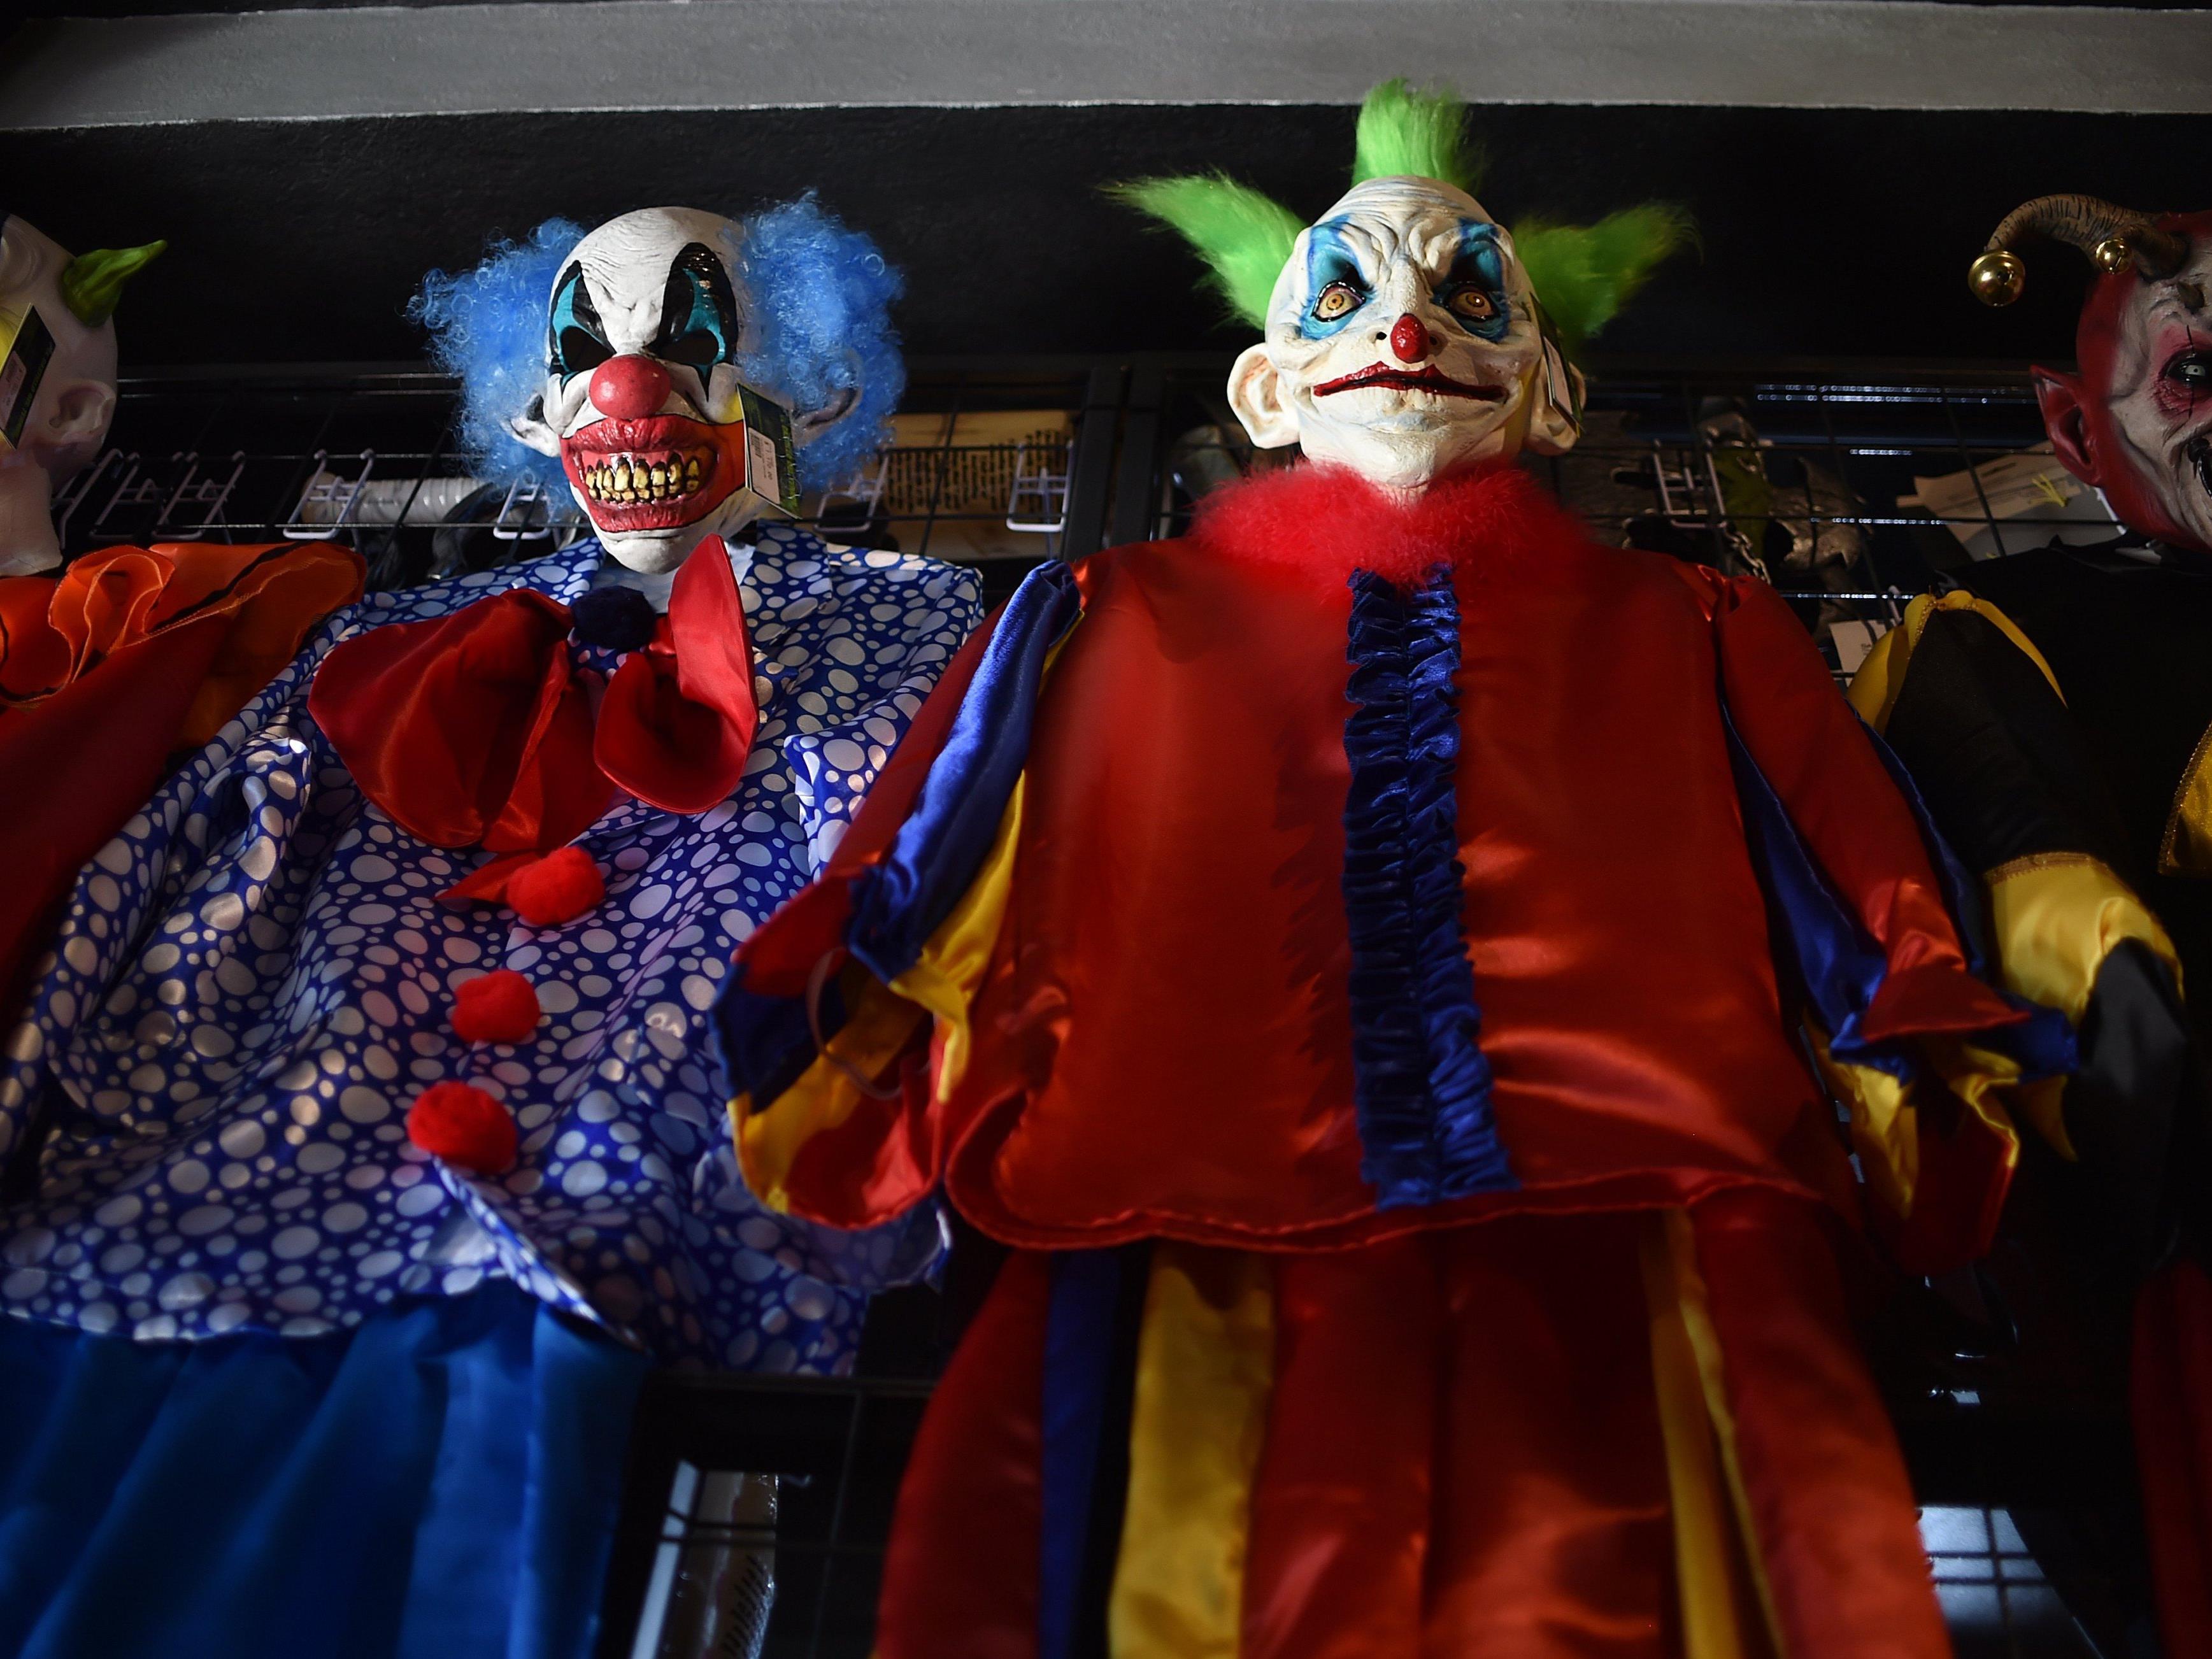 An Halloween wird es dieses Jahr in Vorarlberg in manchen Locations "Clown-Verbote" geben